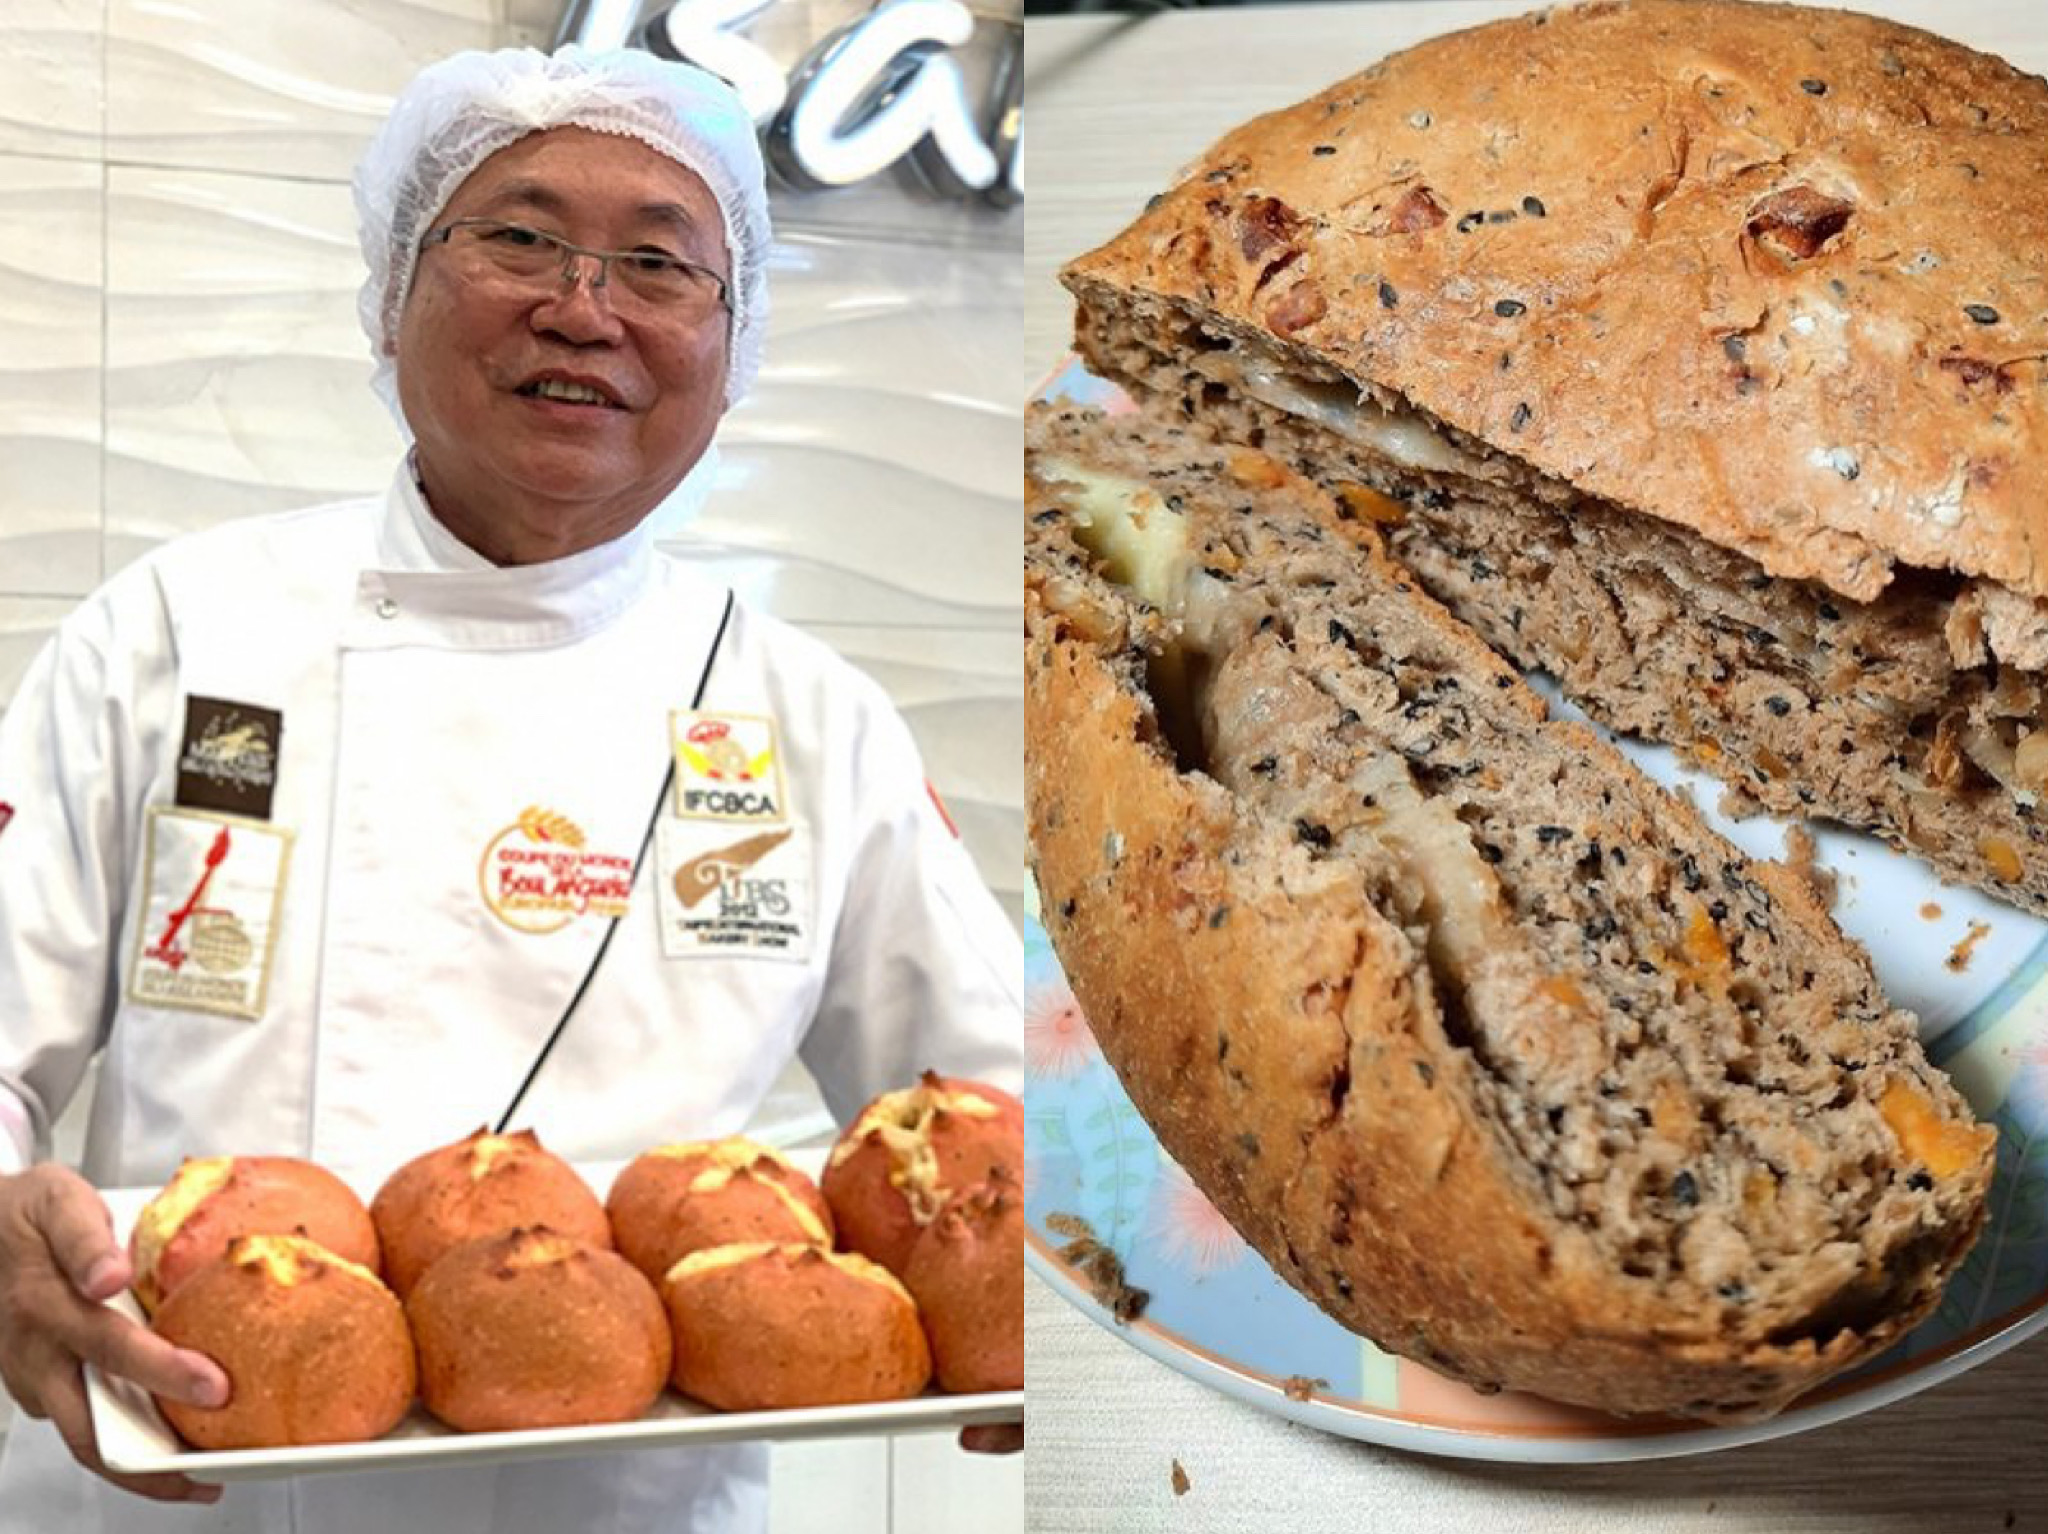 Ông chủ ABC Bakery sáng chế bánh mì đầy đủ chất dinh dưỡng dành cho y, bác sĩ chống dịch Covid-19